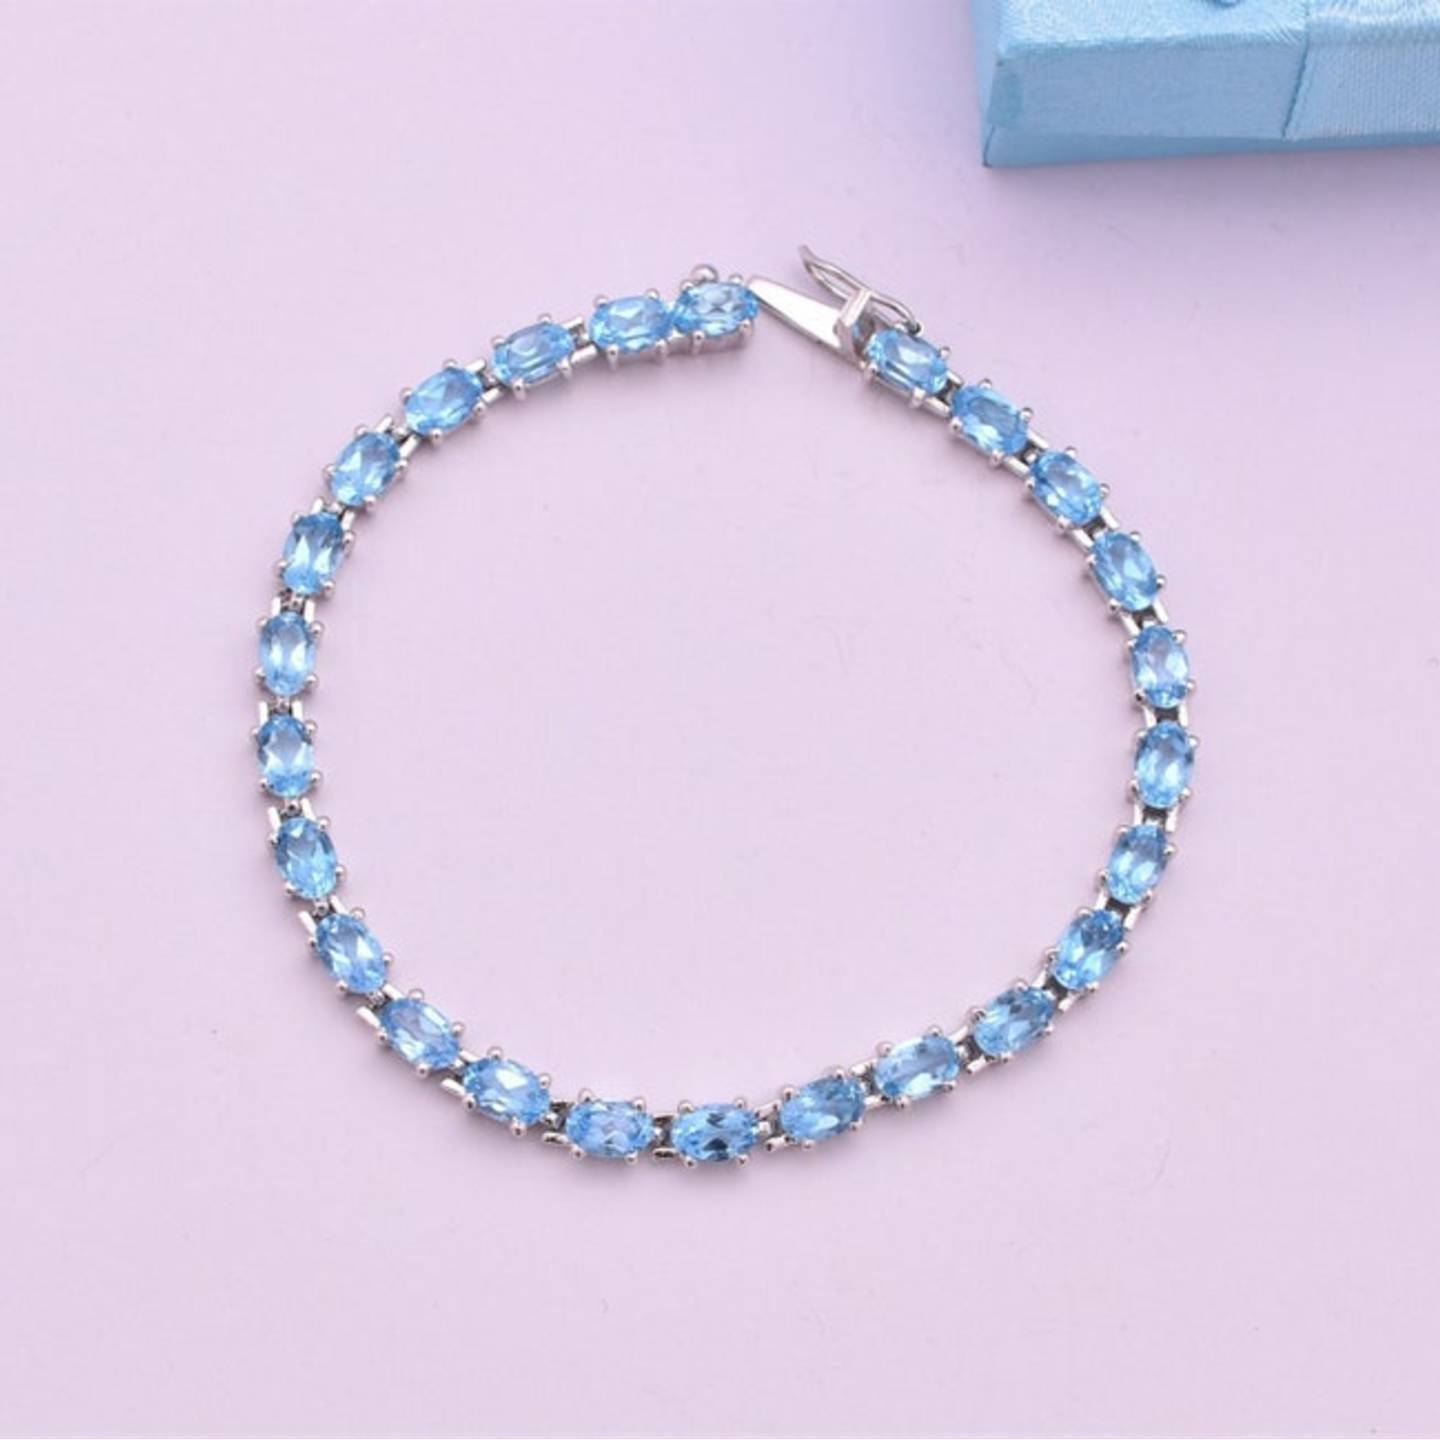 Natural Swiss Blue Topaz Gemstone Bracelet - Solid 925 Sterling Silver Bracelet -Length 7.25 Inches